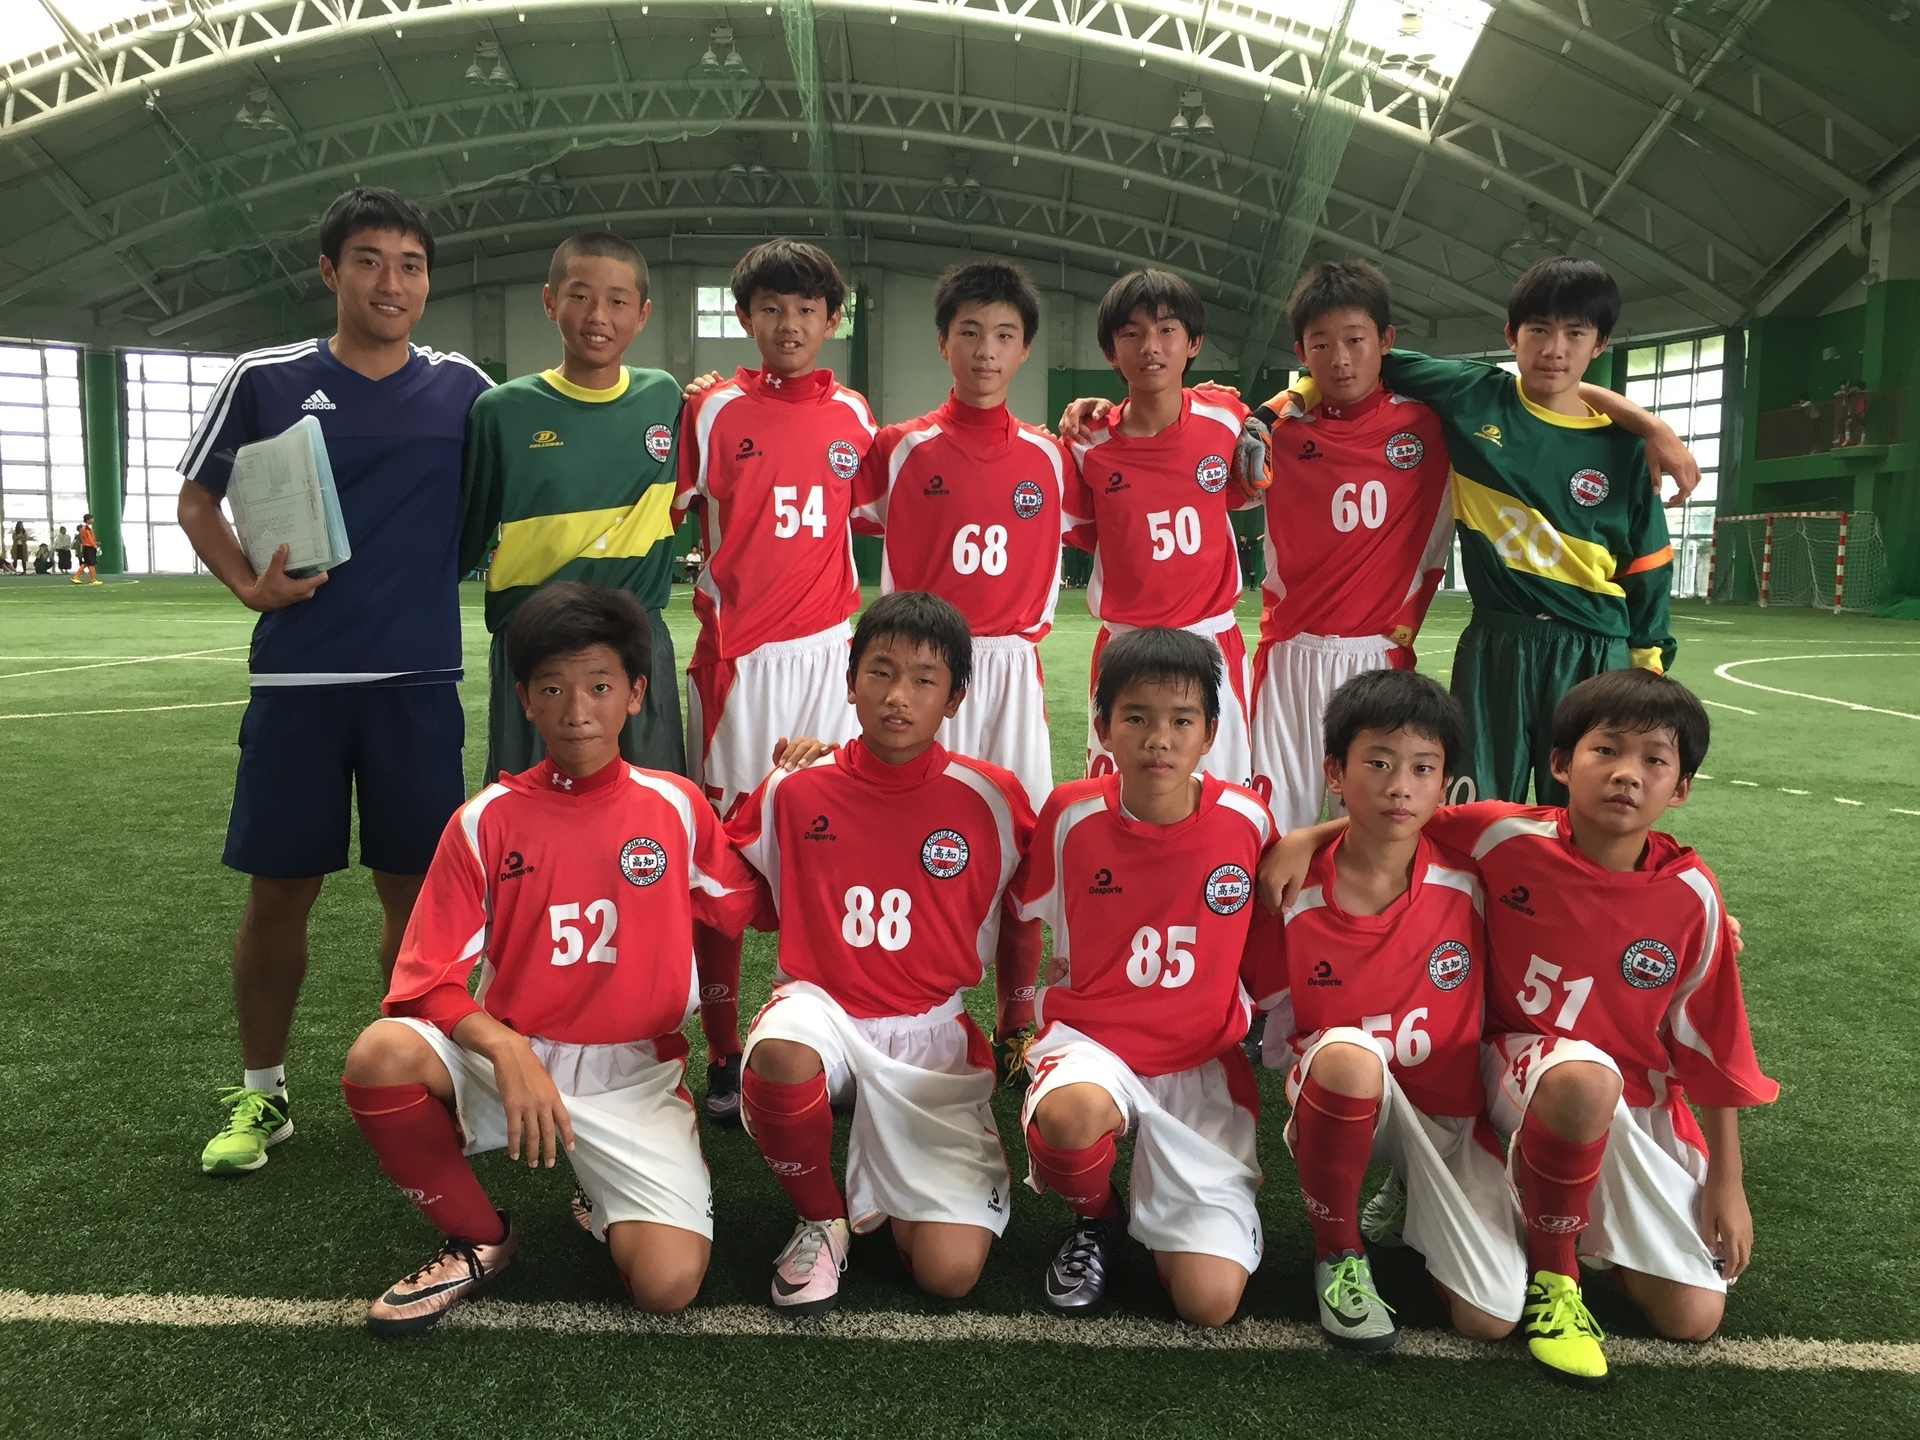 16 フットサル U 15 高知県予選大会 高知中学校 サッカー部